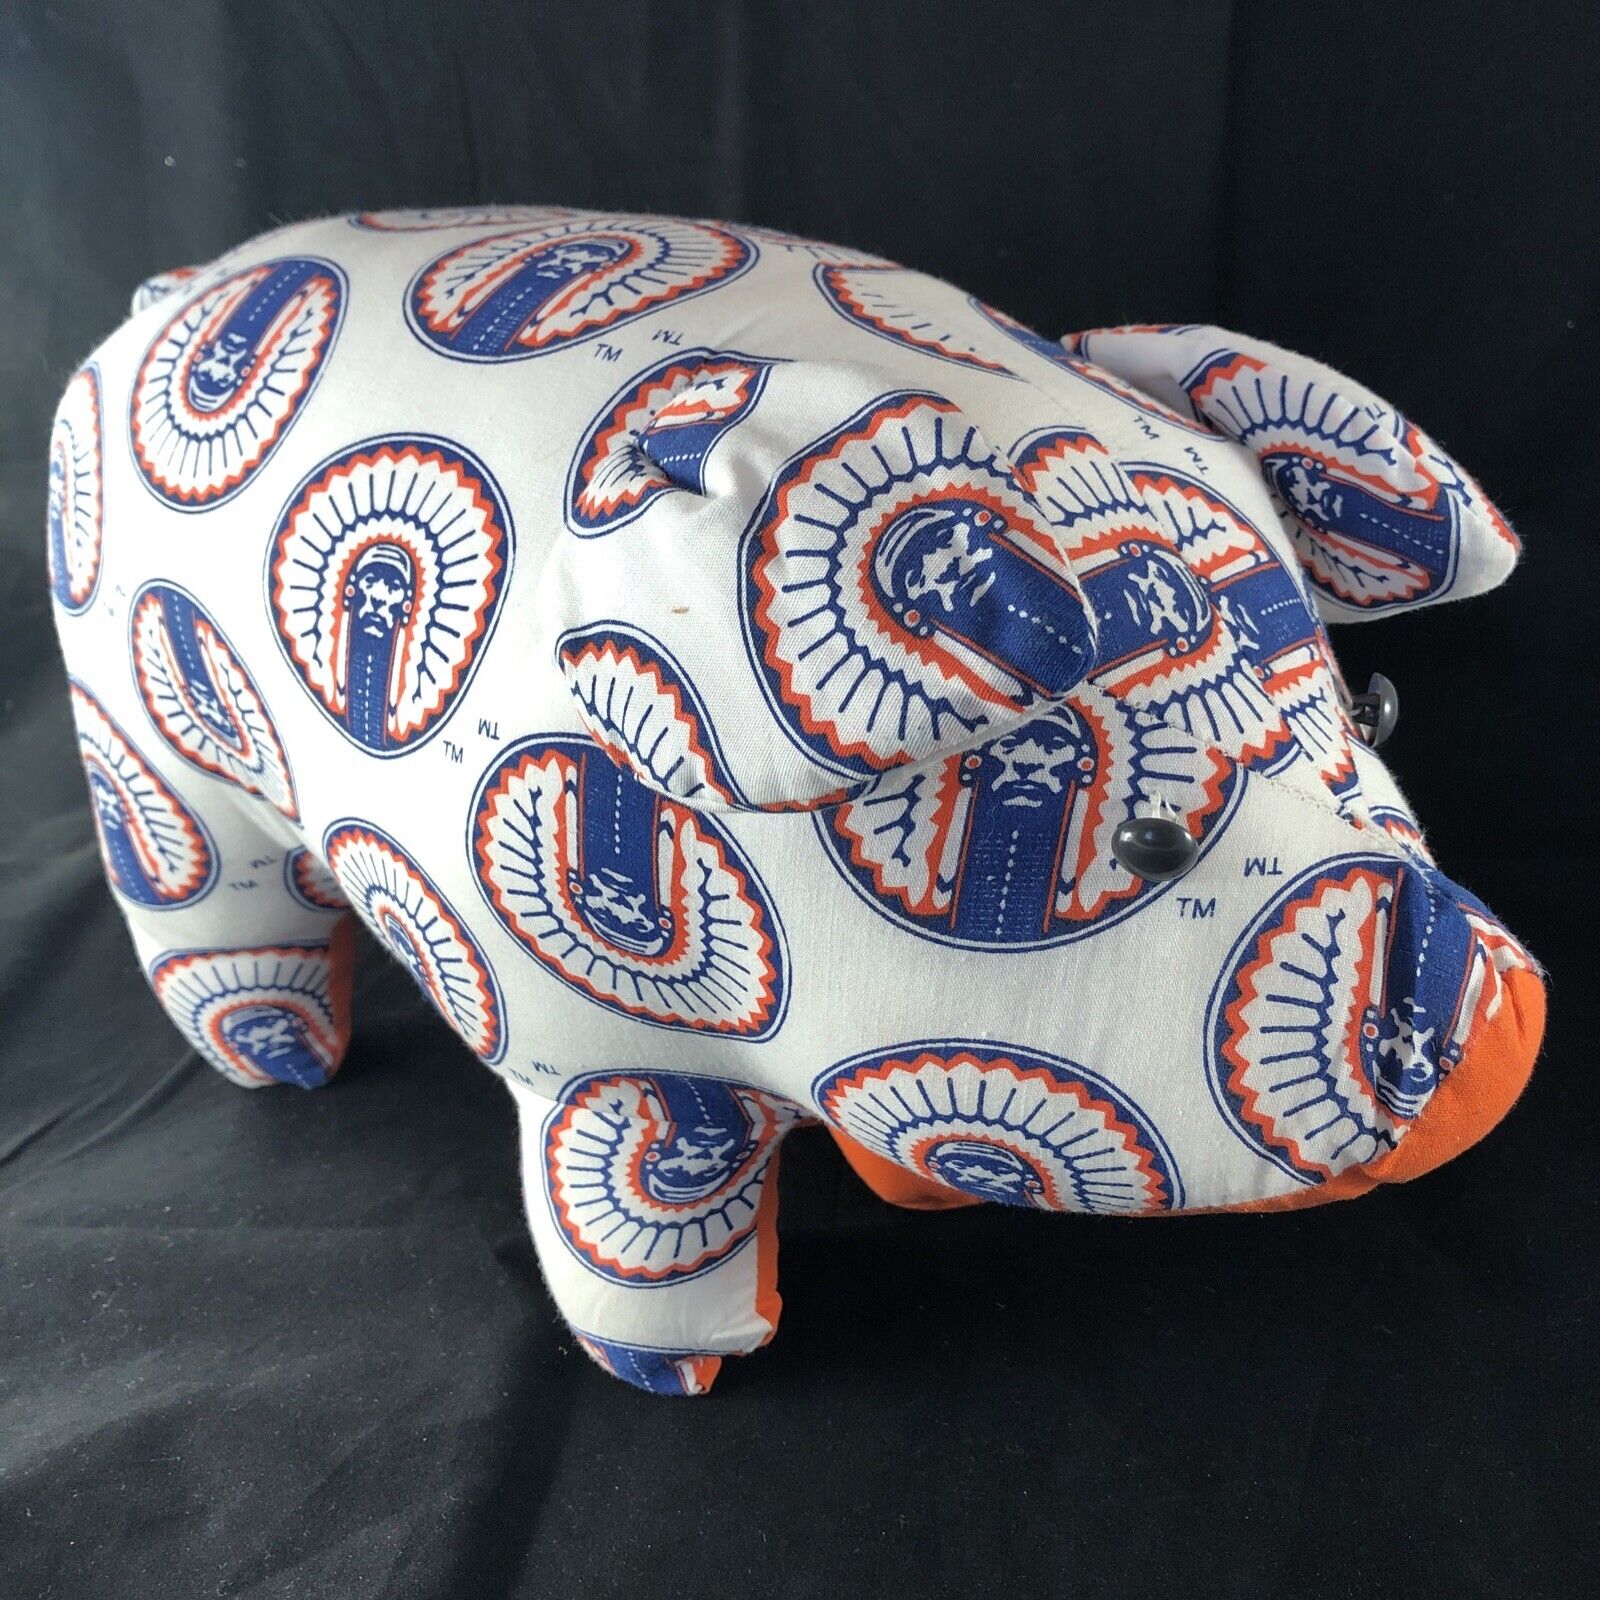 Large 15” Vintage University of Illinois Illini Chief Stuffed Pig Animal Plush